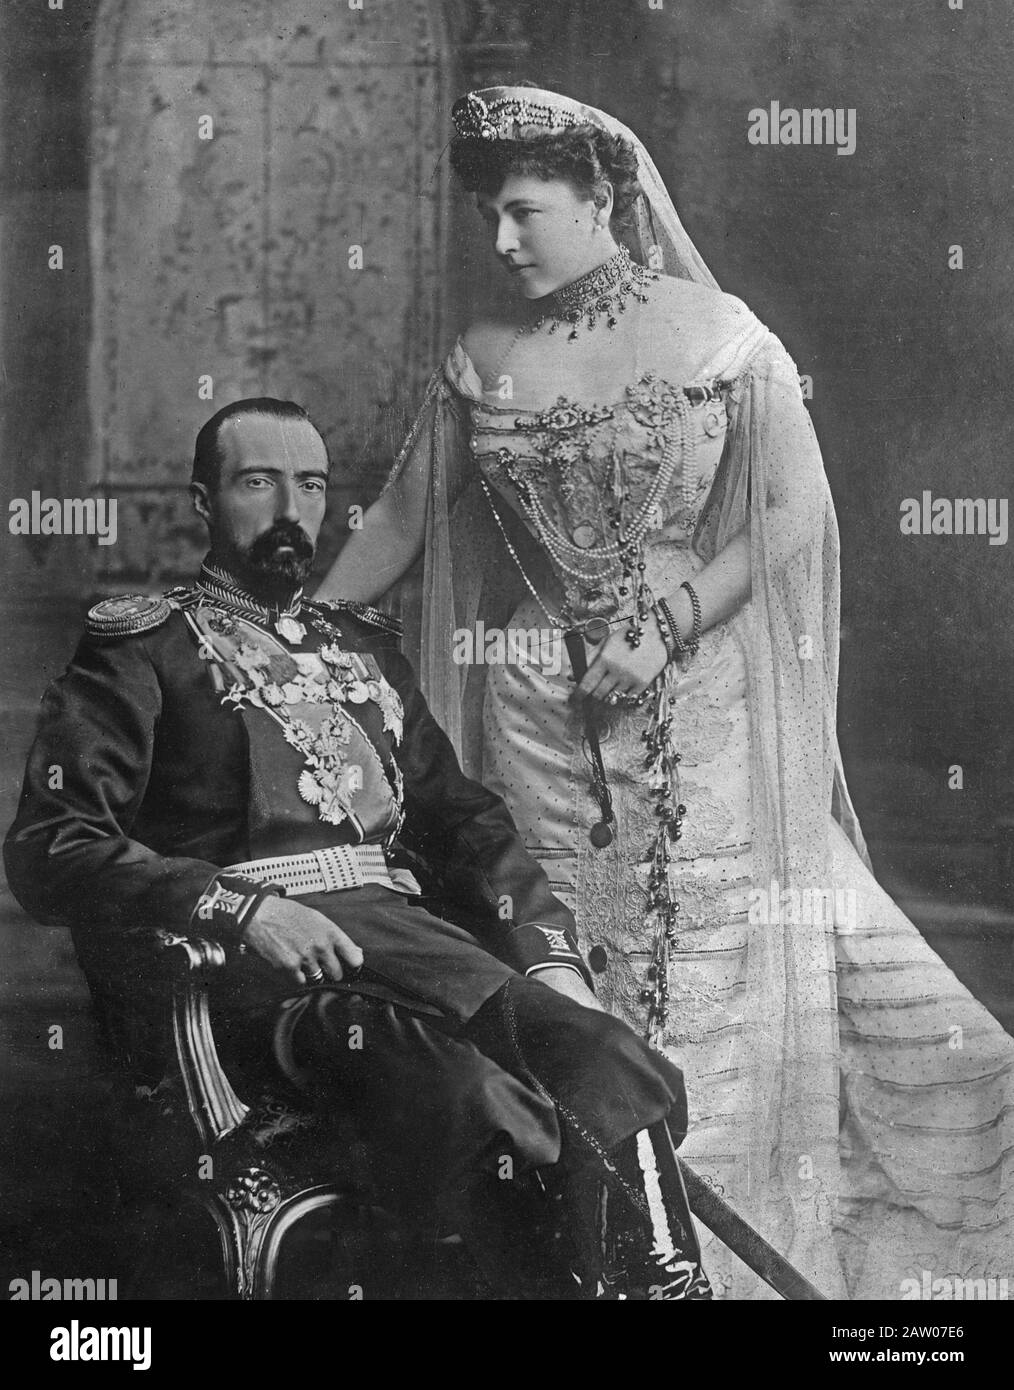 Grand-duc Michael Mikhaïlovitch de Russie (1861-1929) et sa femme comtesse Sophie de Merenberg, comtesse de Torby (1868-1927) CA. 1913 Banque D'Images